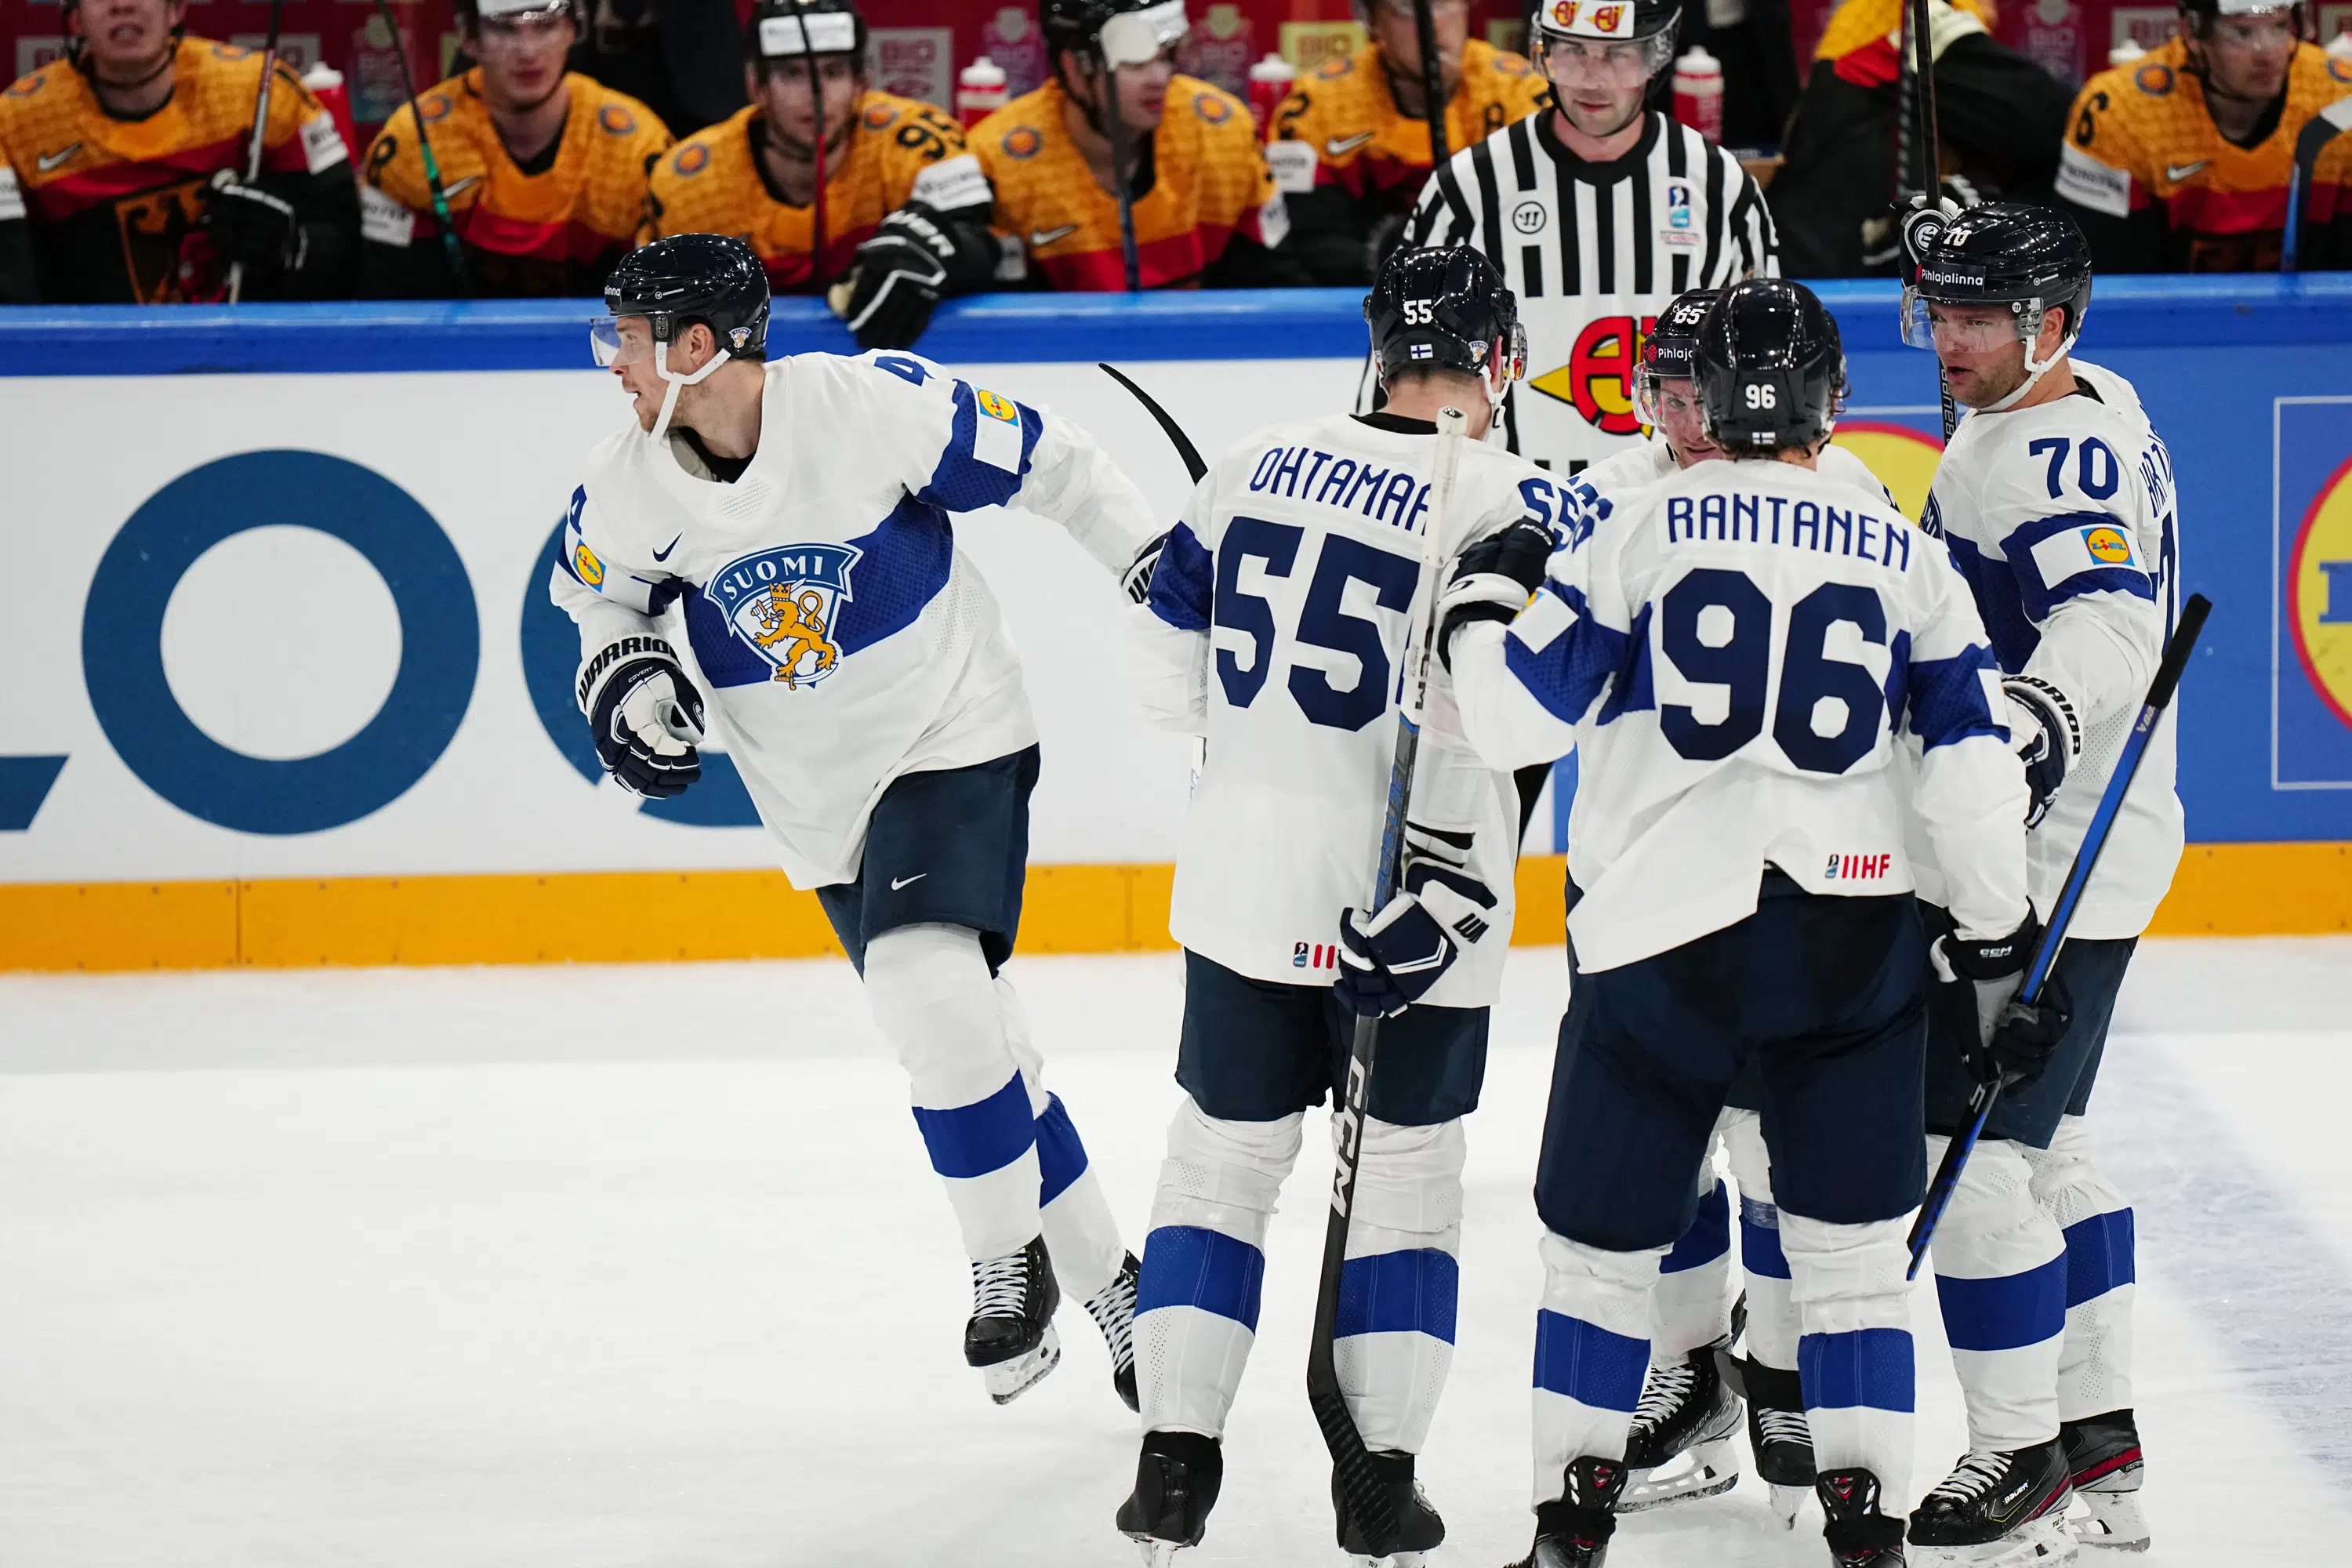 Titelverteidiger Finnland schlägt Deutschland und die Slowakei schlägt Gastgeberland Lettland im Eishockeyturnier